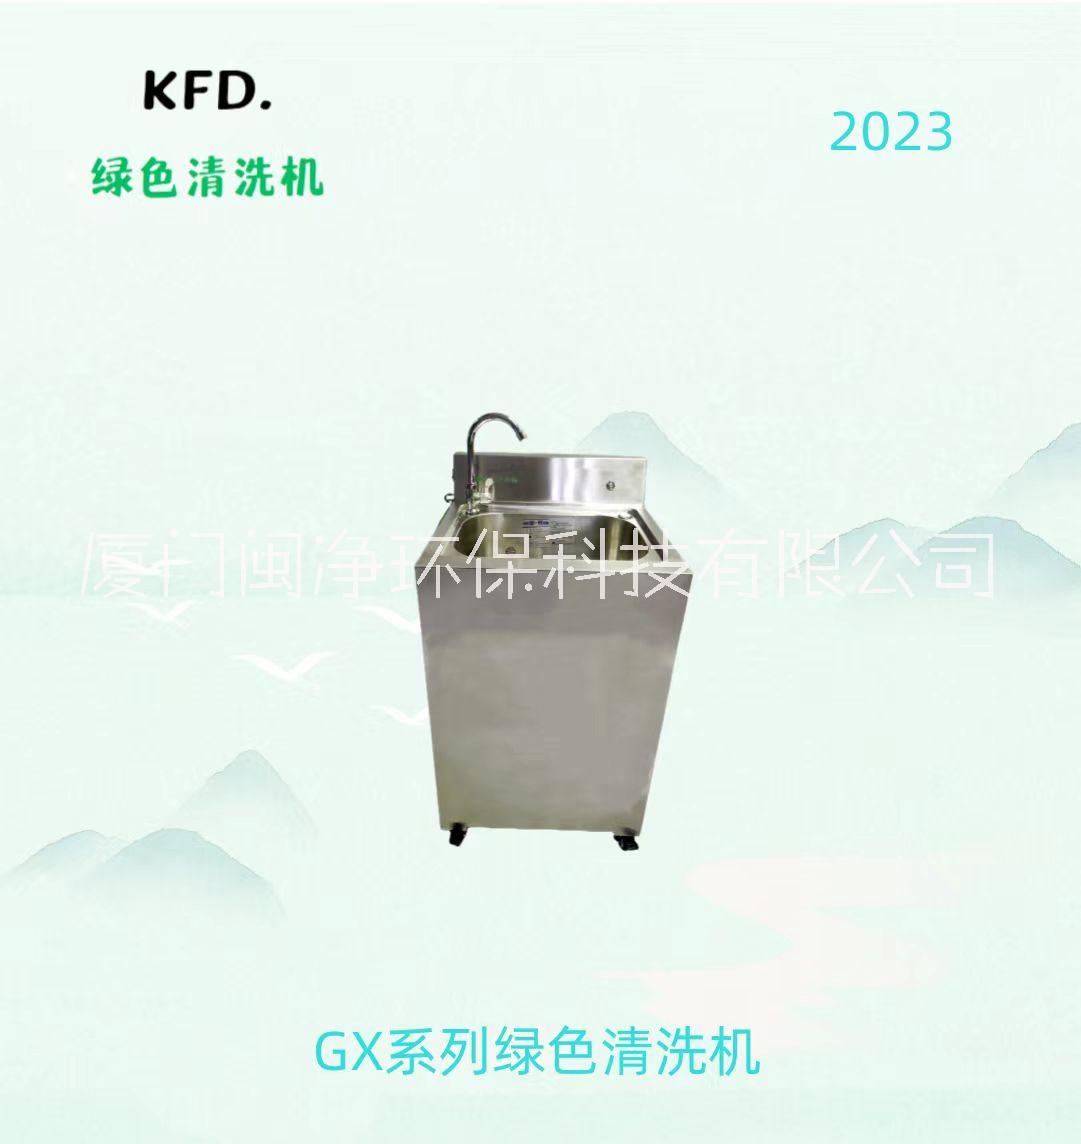 GX清洗机